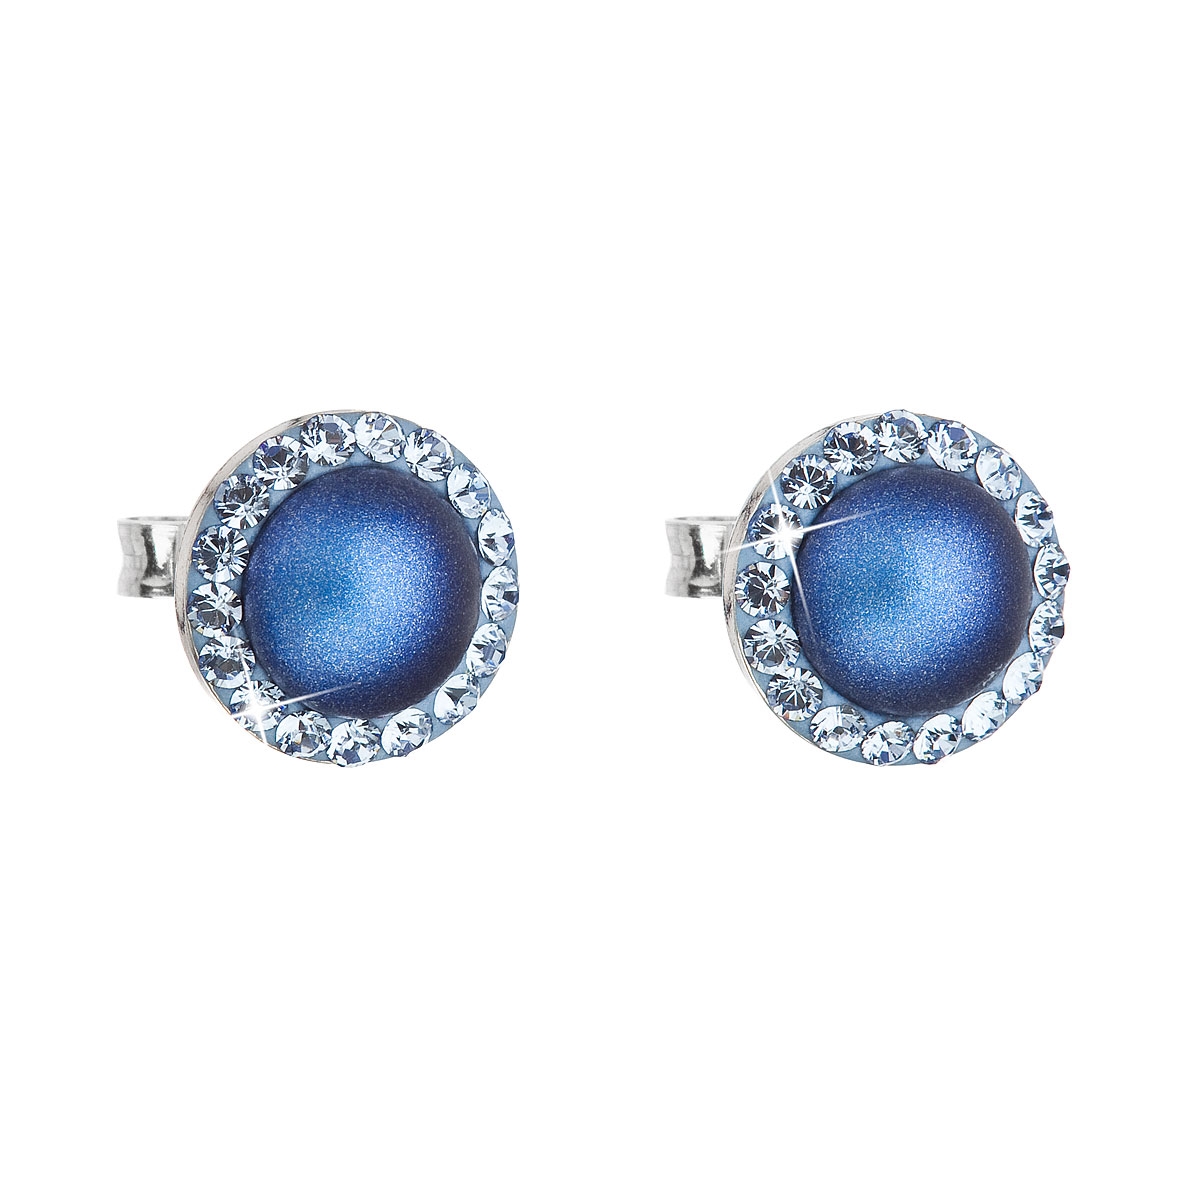 Strieborné náušnice s perlami a kamienkami Crystals from Swarovski ® Light Sapphire